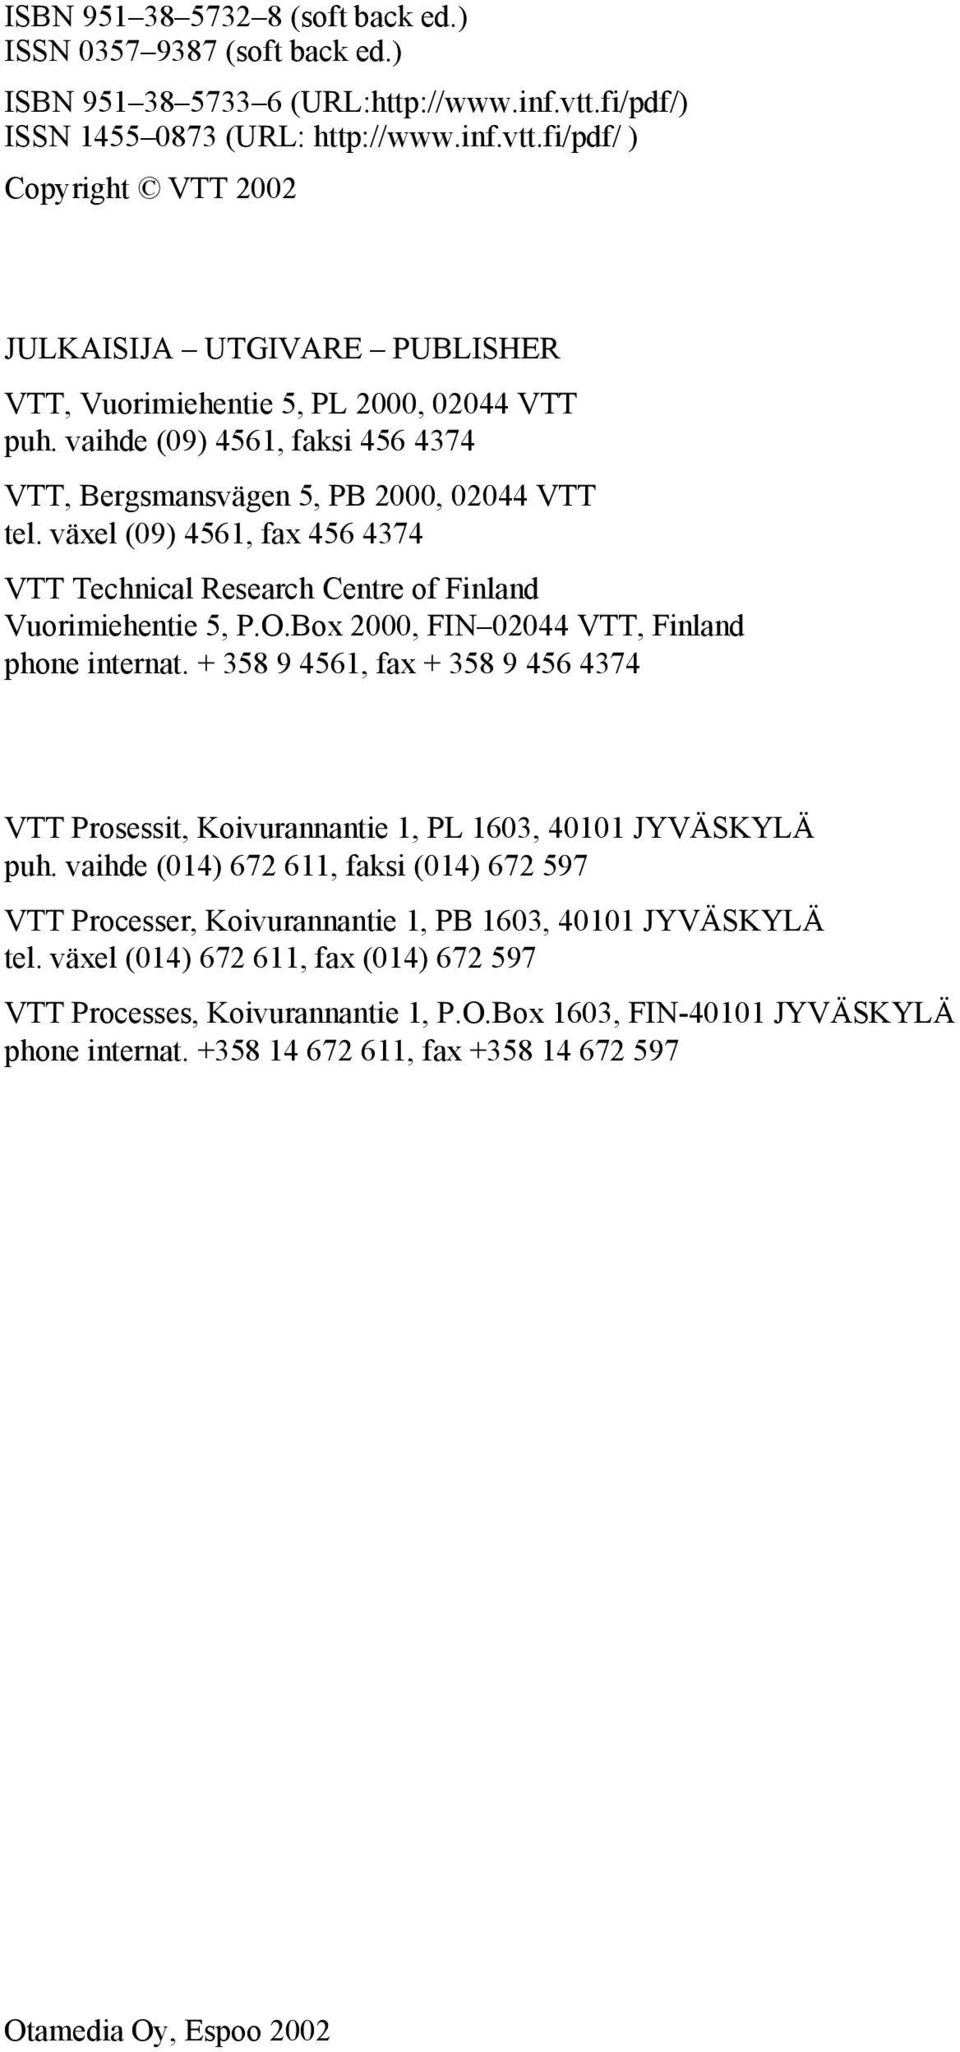 vaihde (09) 4561, faksi 456 4374 VTT, Bergsmansvägen 5, PB 2000, 02044 VTT tel. växel (09) 4561, fax 456 4374 VTT Technical Research Centre of Finland Vuorimiehentie 5, P.O.